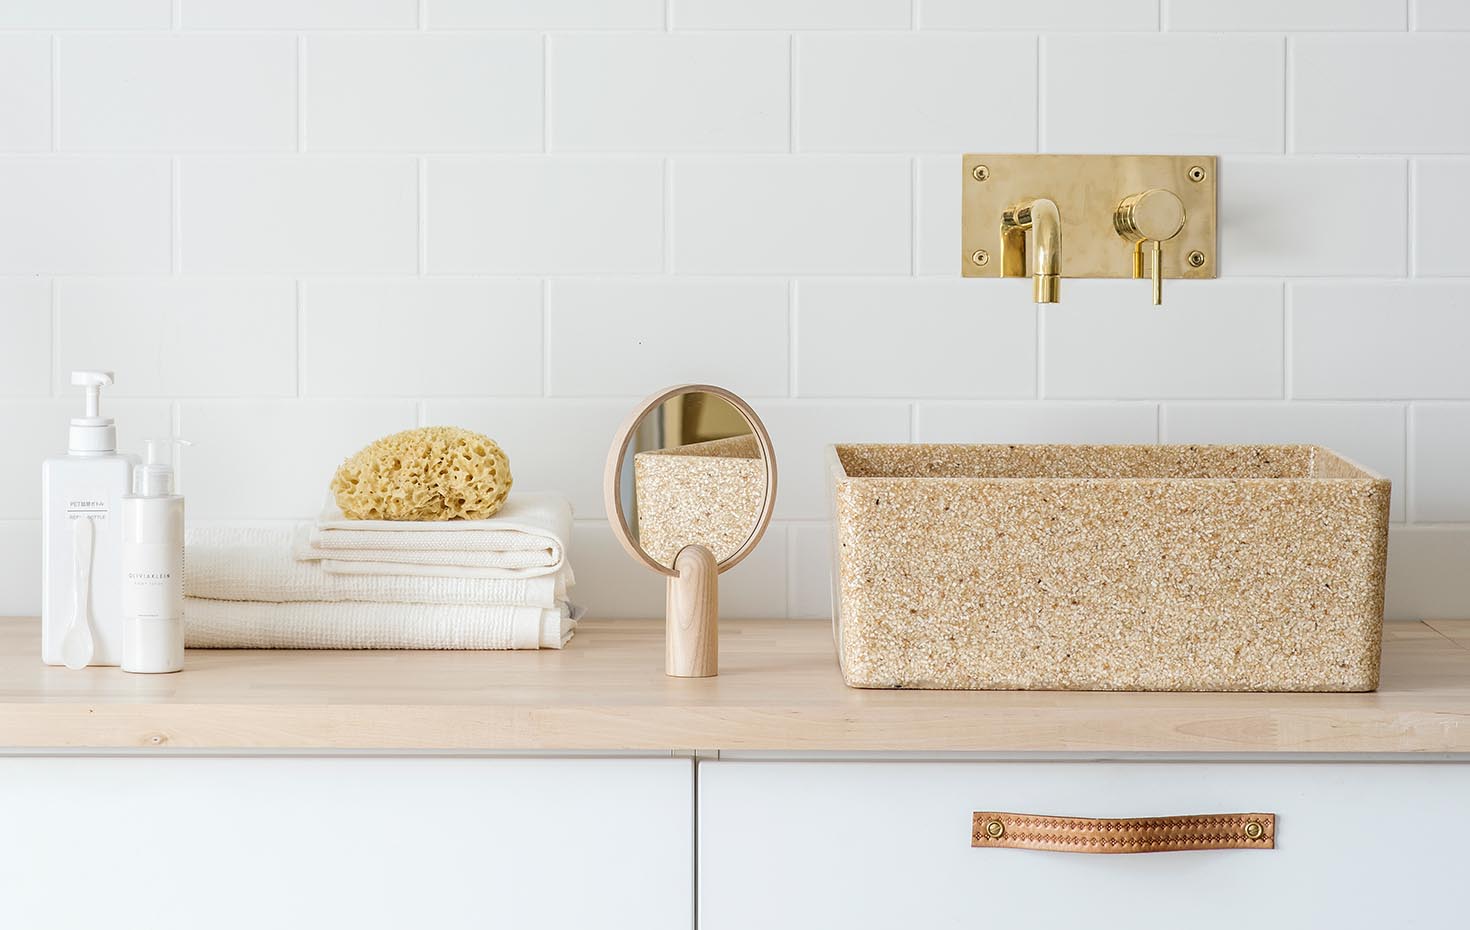 Zellulosematerial - Woodio Toilette und Waschbecken aus Holz und Zellulose